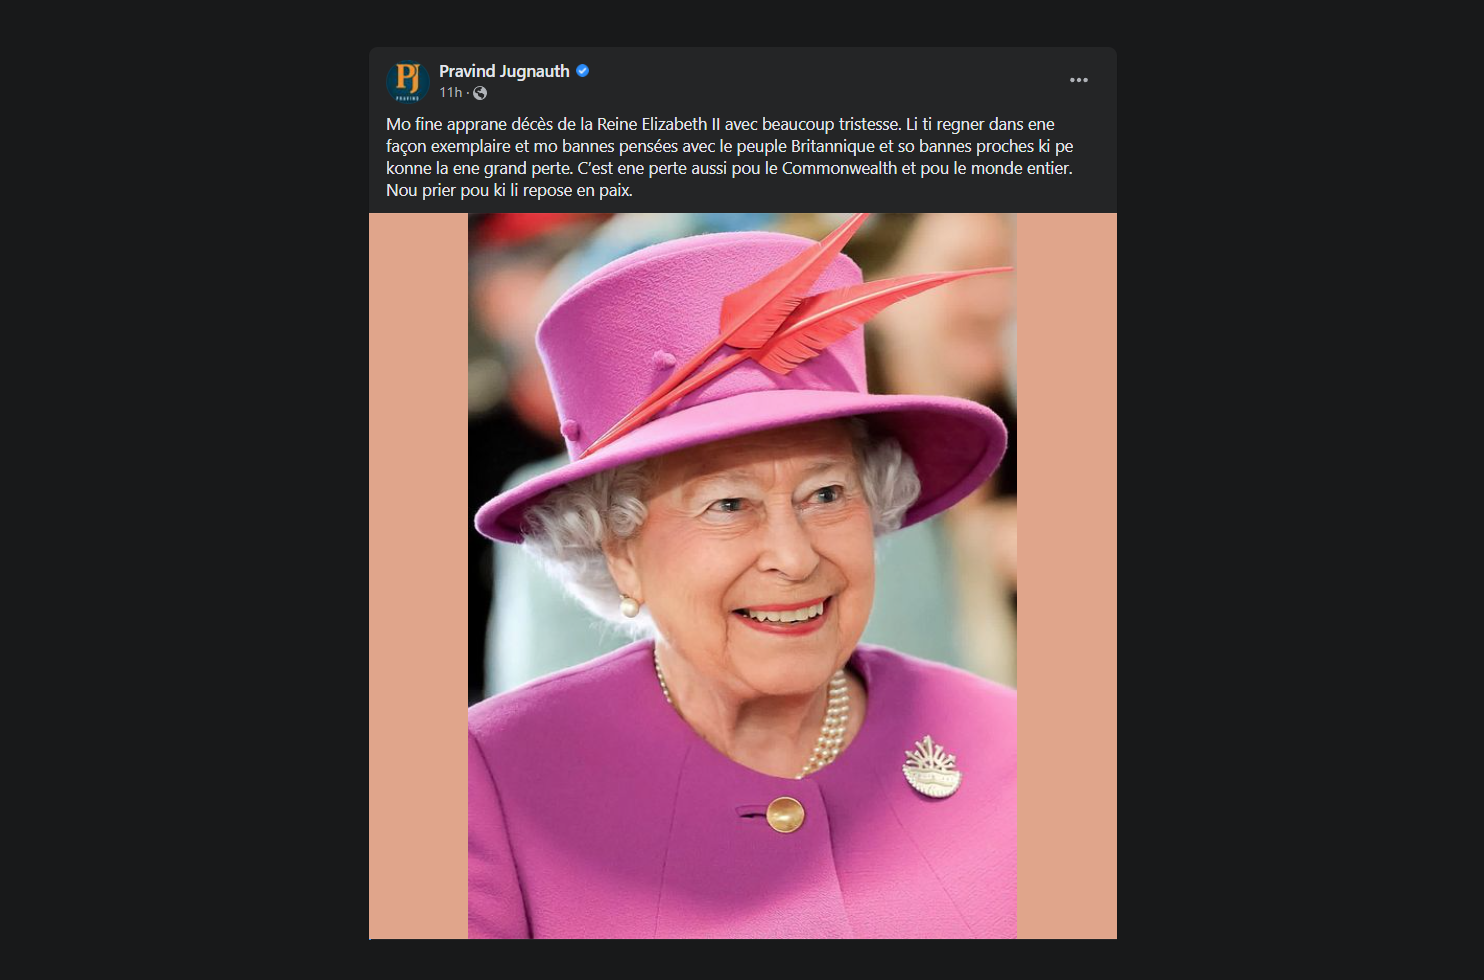 Le PM se dit attristé par le décès de la Reine Elizabeth II